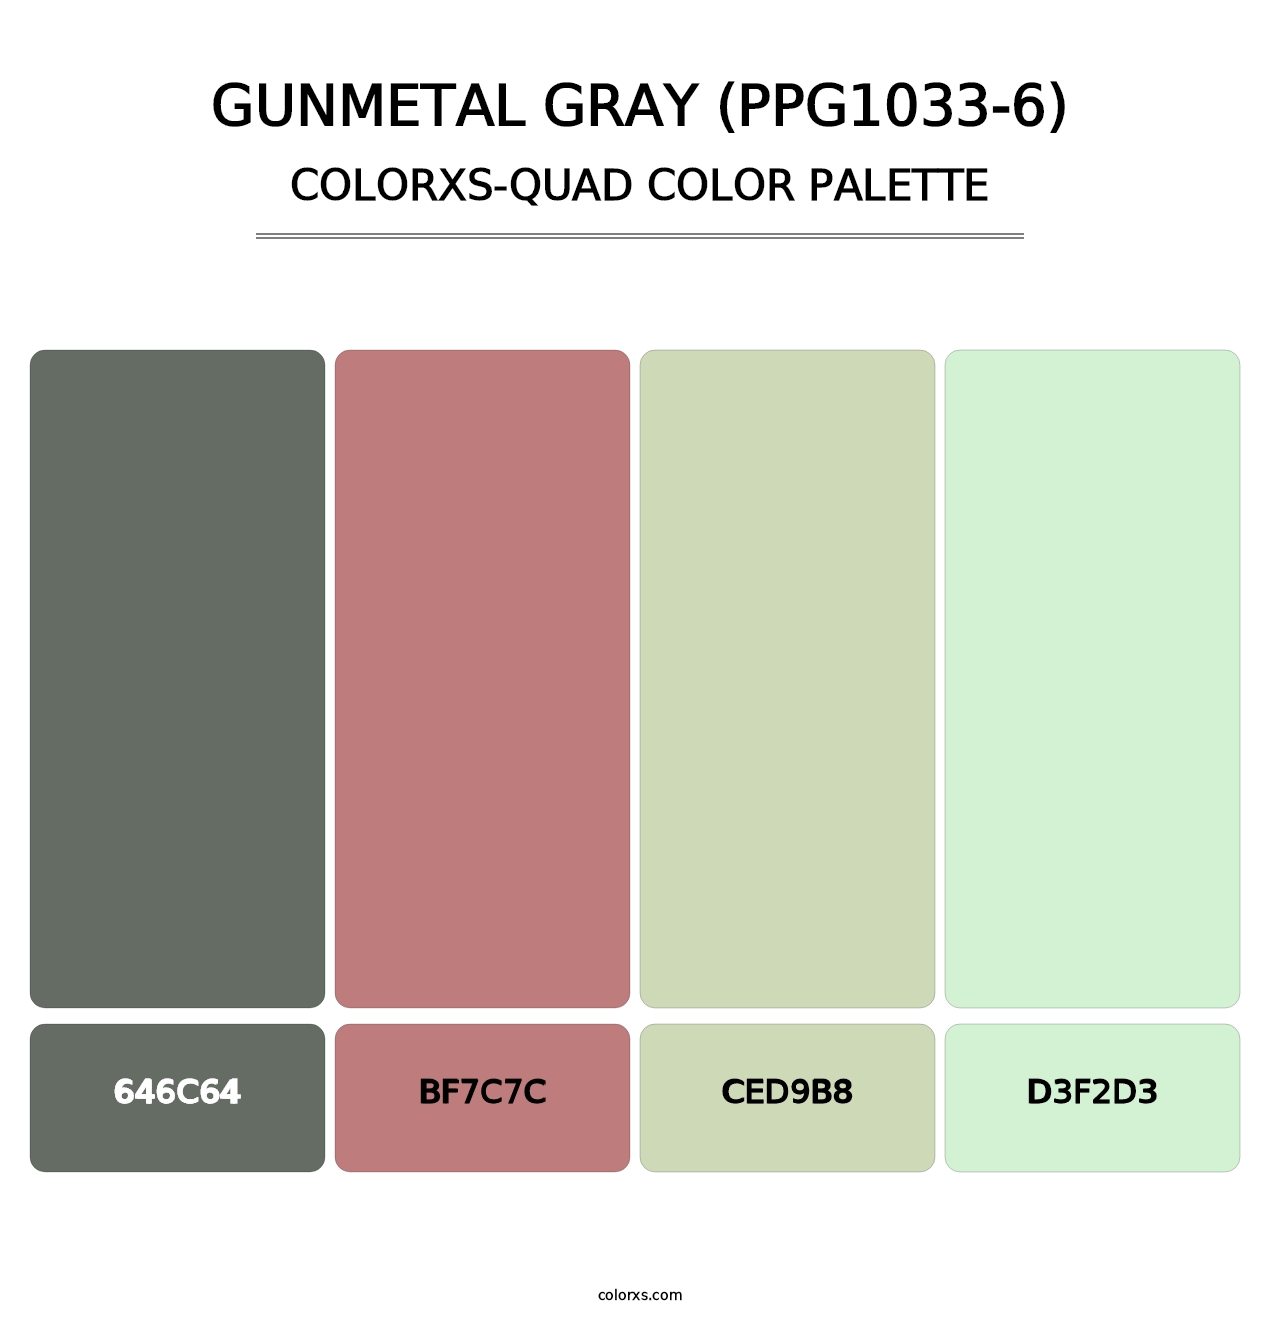 Gunmetal Gray (PPG1033-6) - Colorxs Quad Palette